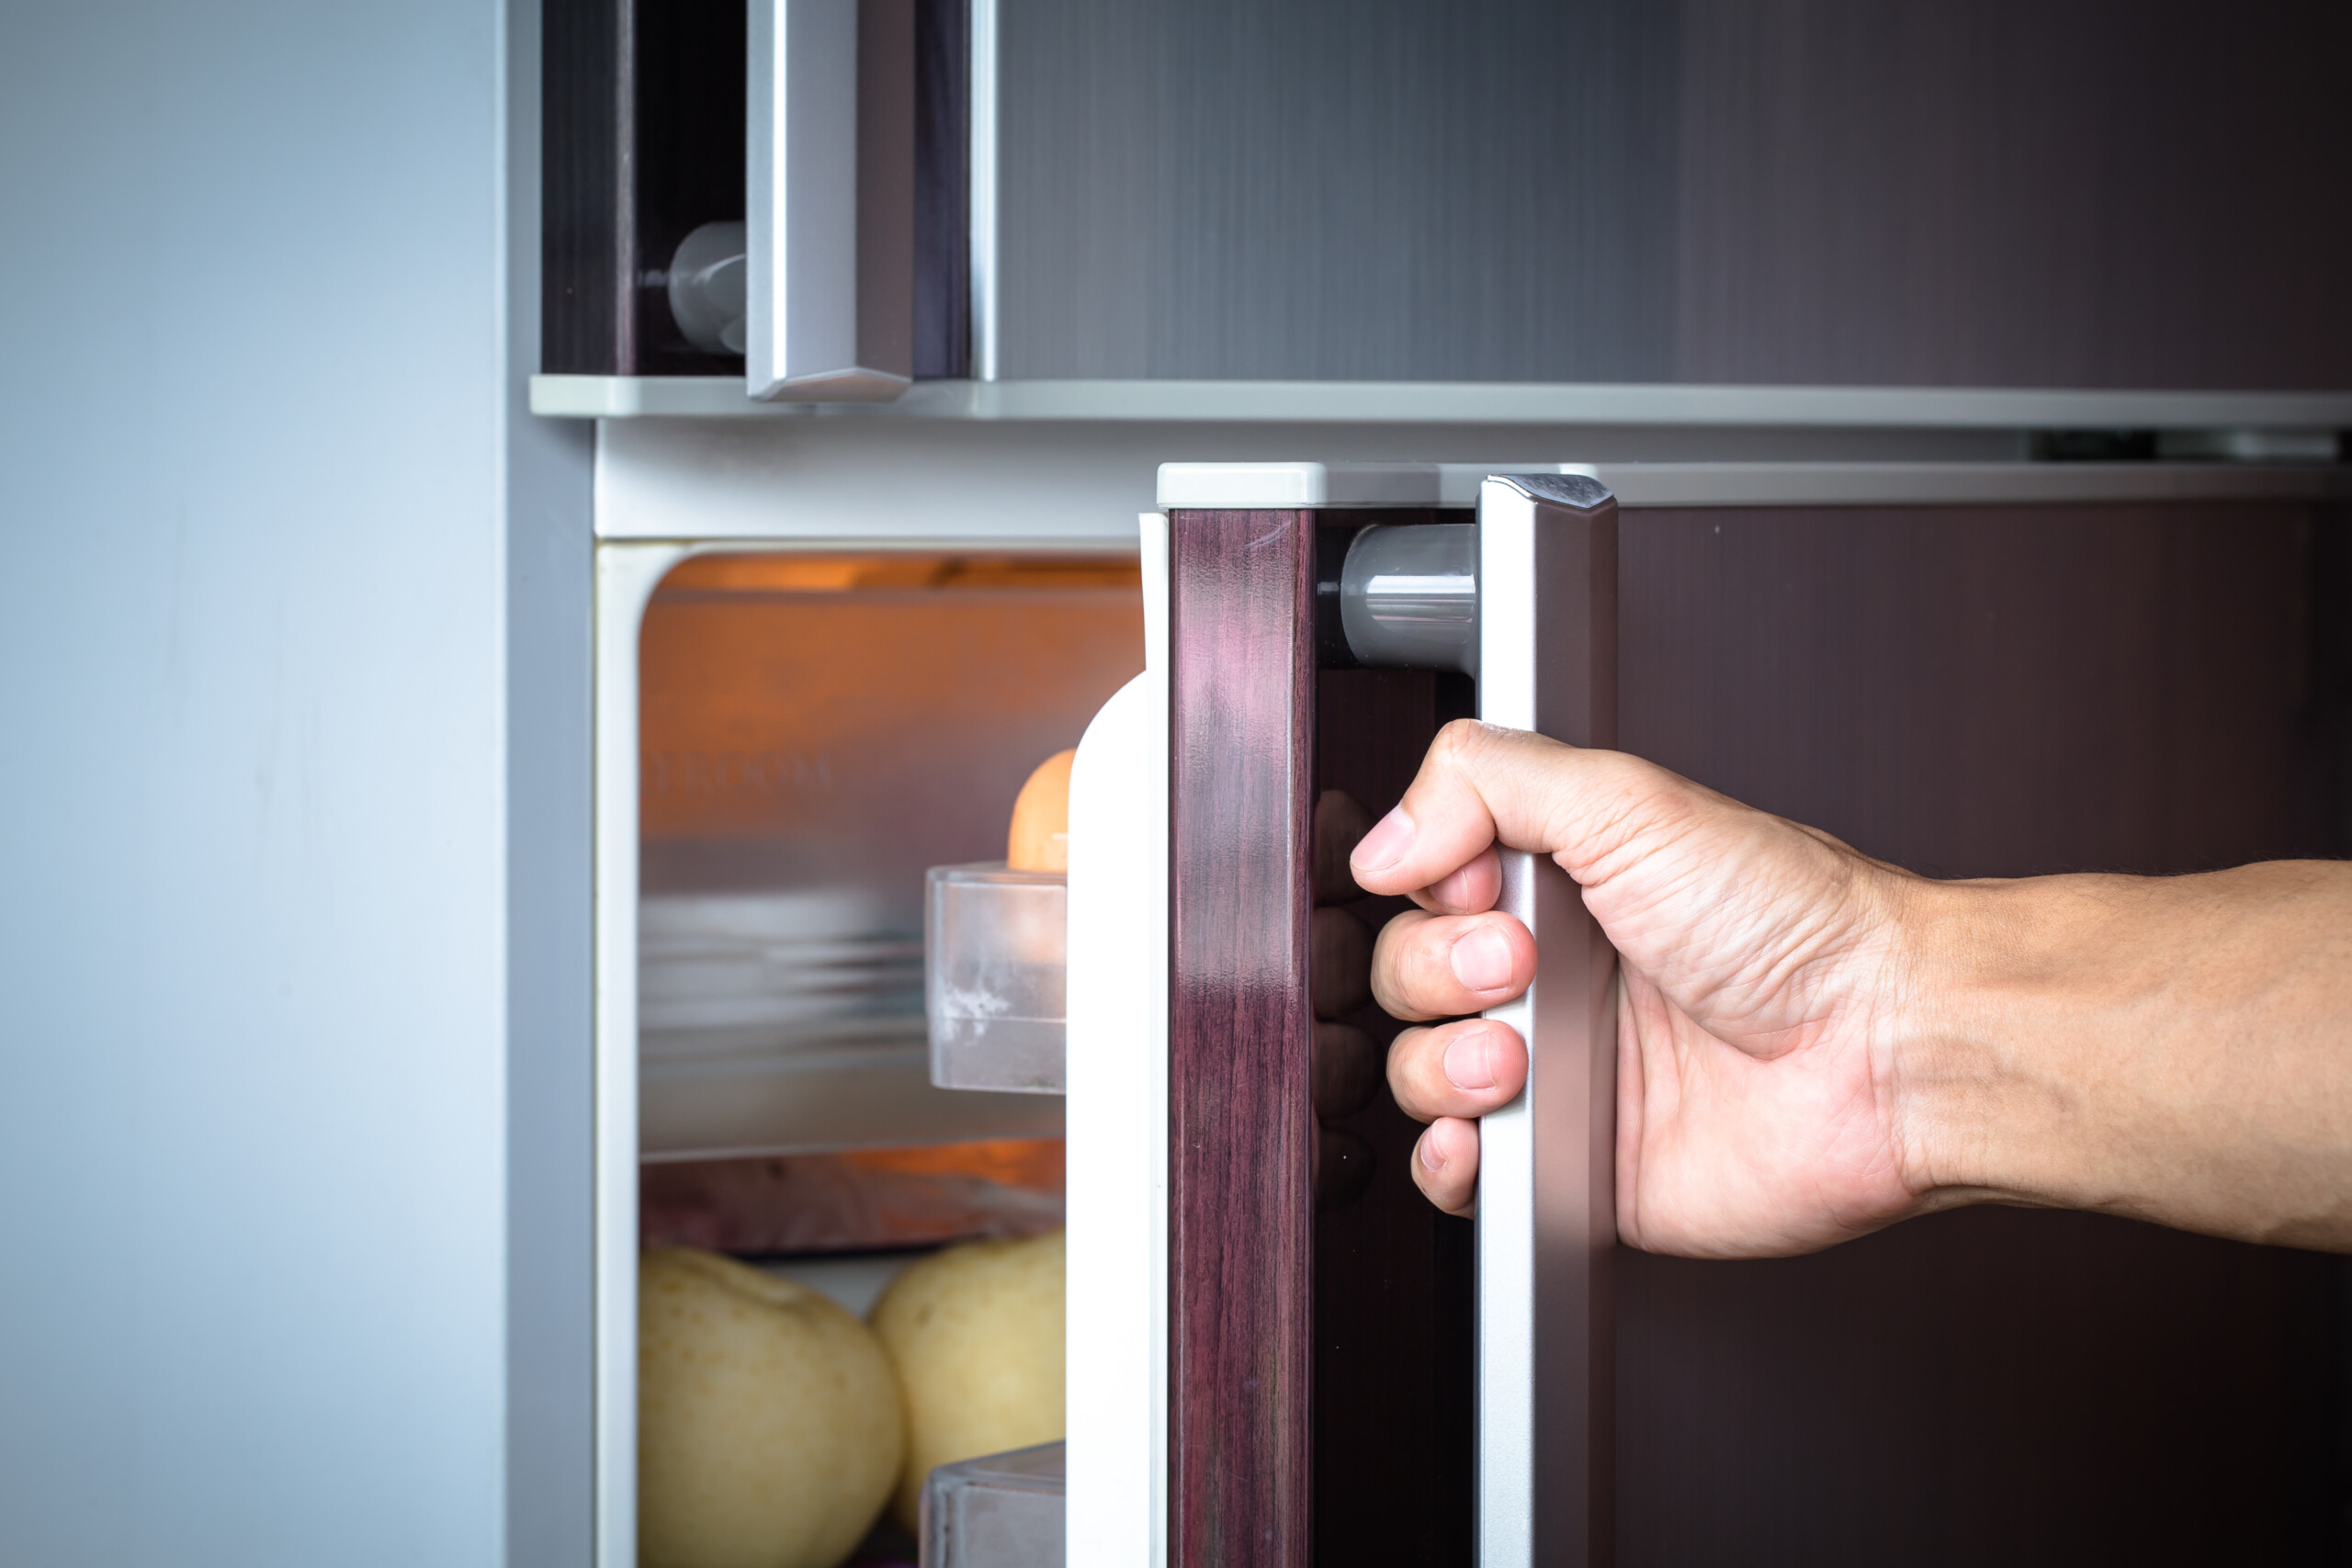 como arrumar e organizar o frigorífico conservar alimentos intoxicações alimentares